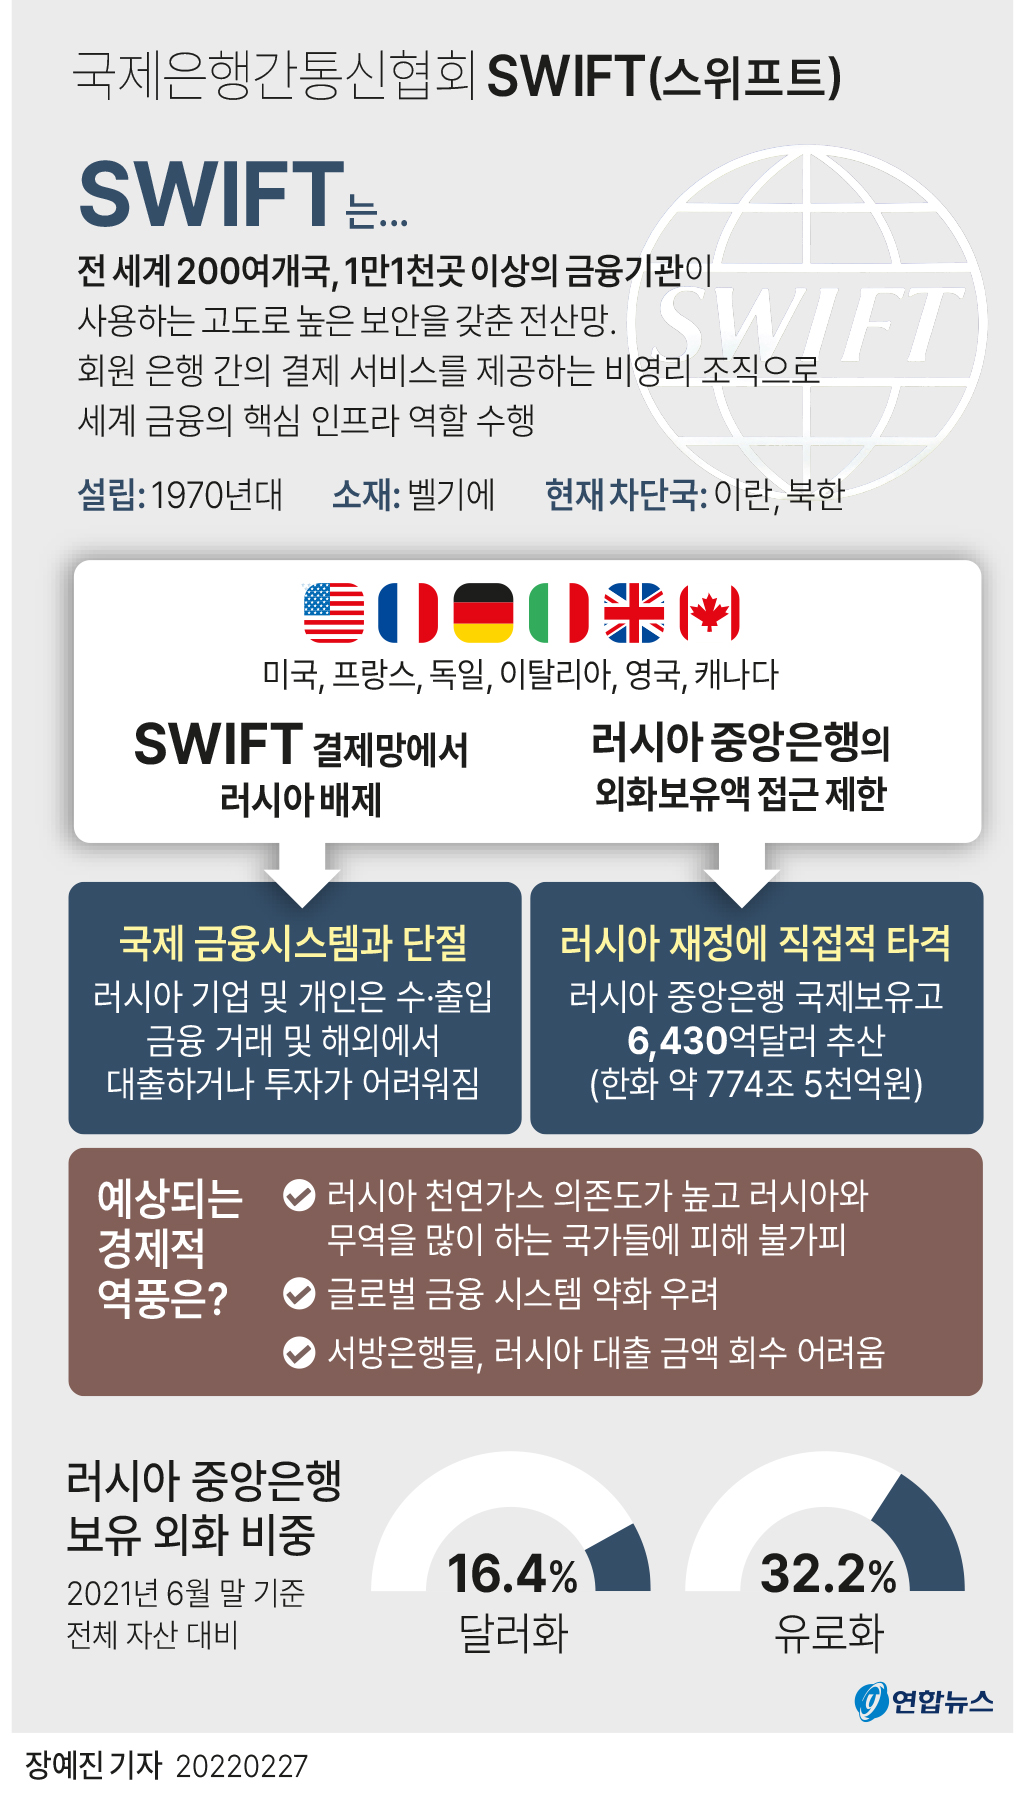 [그래픽] 국제은행간통신협회 SWIFT(종합)